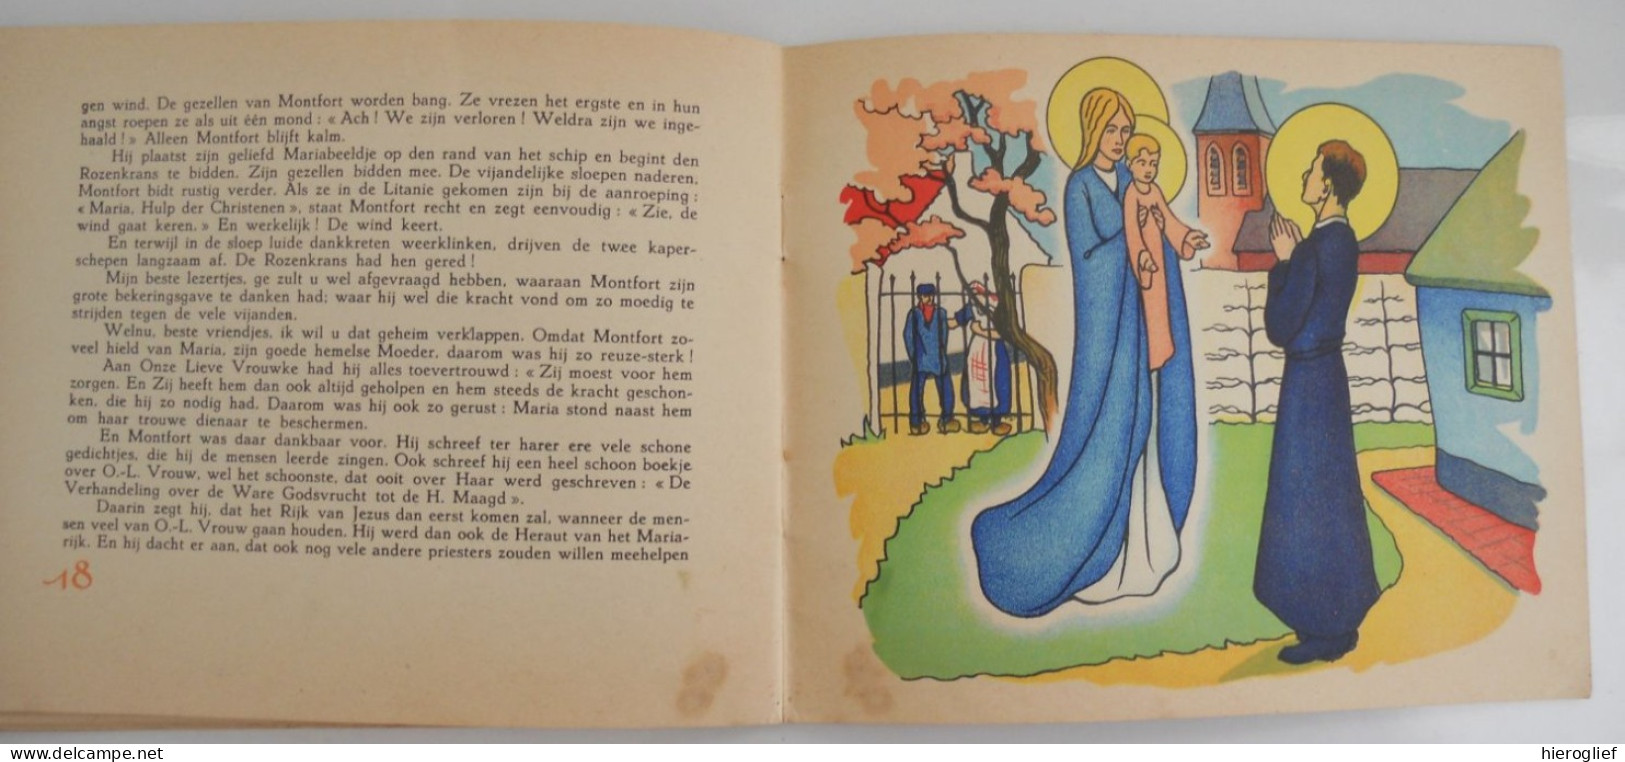 Het wonderbare leven van den Heiligen LOUIS-MARIE de MONFORT   uitgave v Monfortaans seminarie Rotselaar